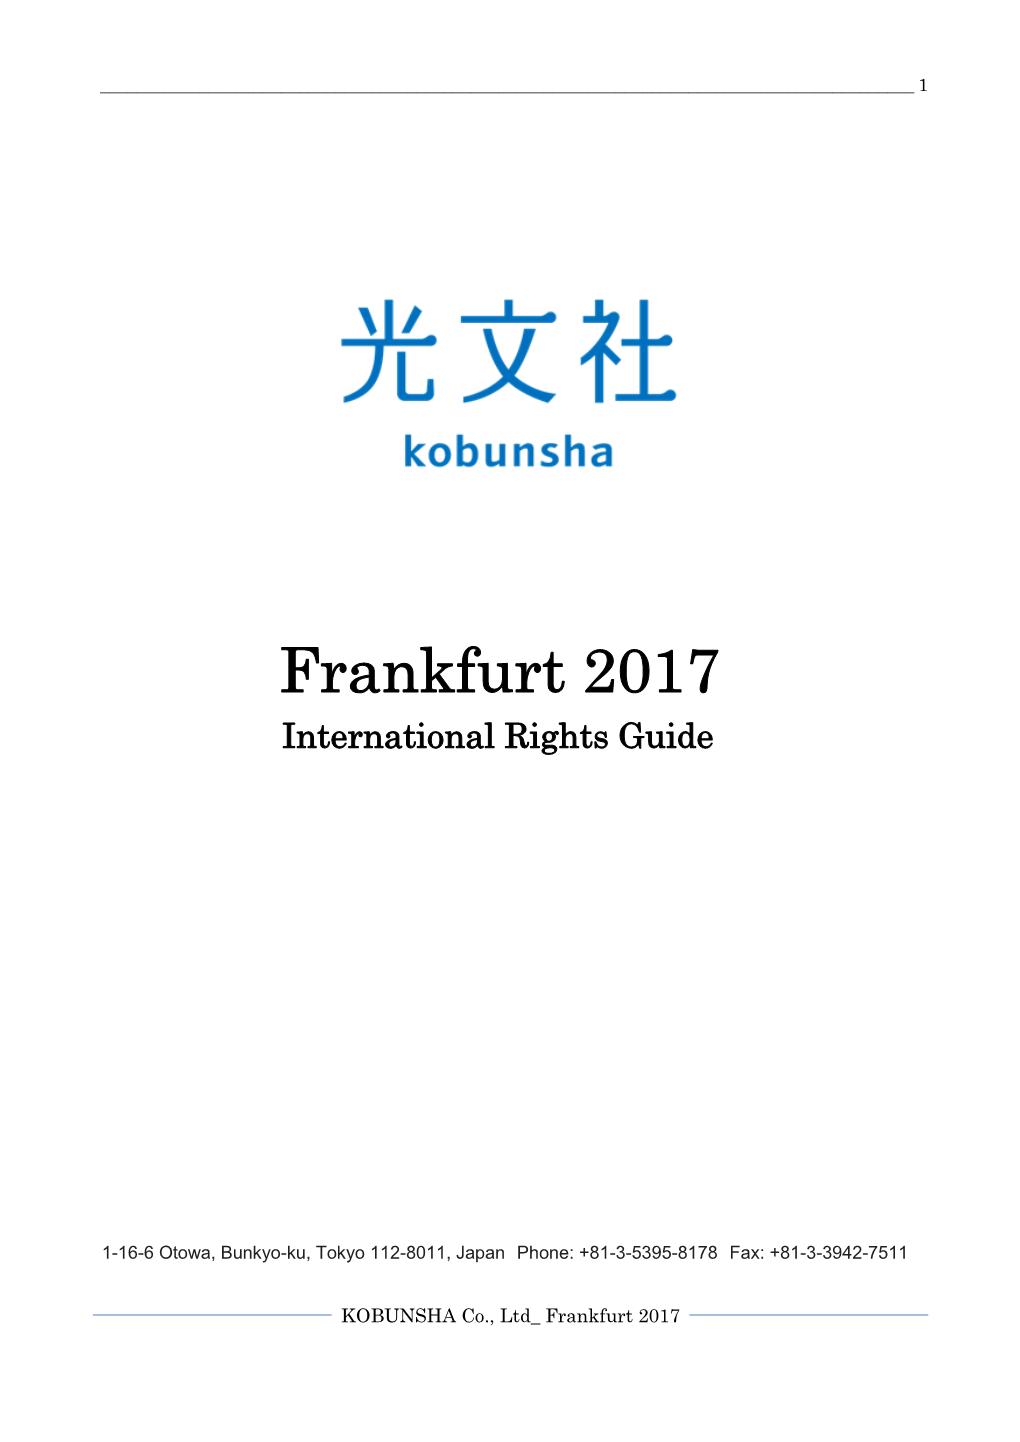 Frankfurt 2017 International Rights Guide